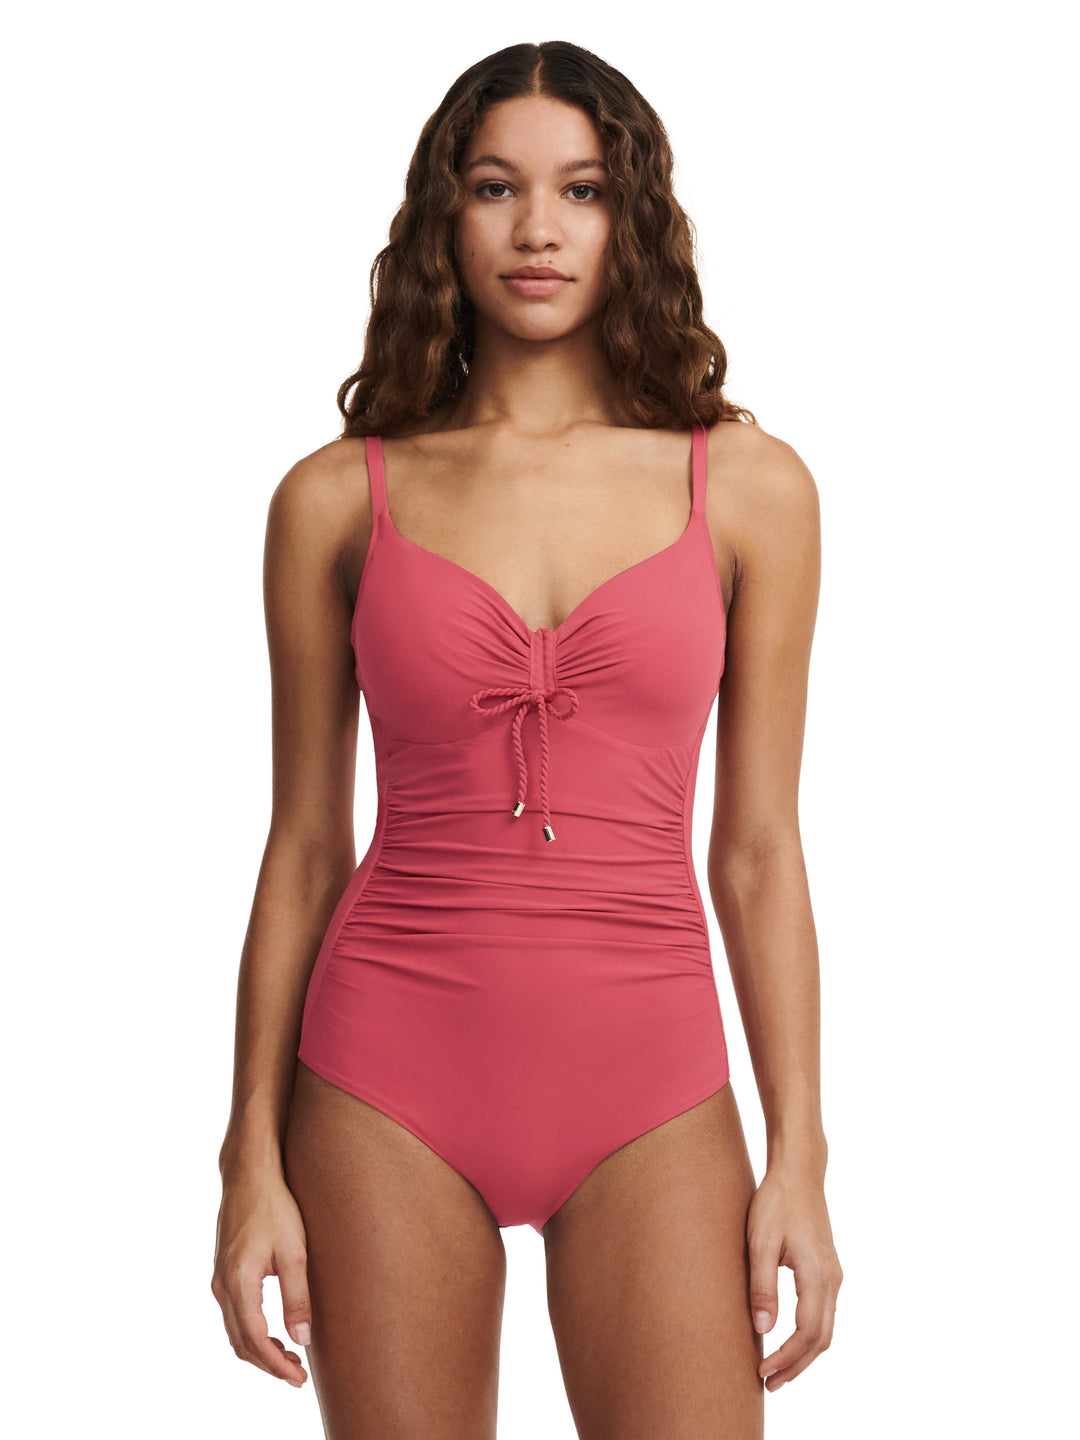 Chantelle Swimwear - Inspire Covering Underwired Swimsuit Garnet Red Full Cup Swimsuit Chantelle Swimwear 